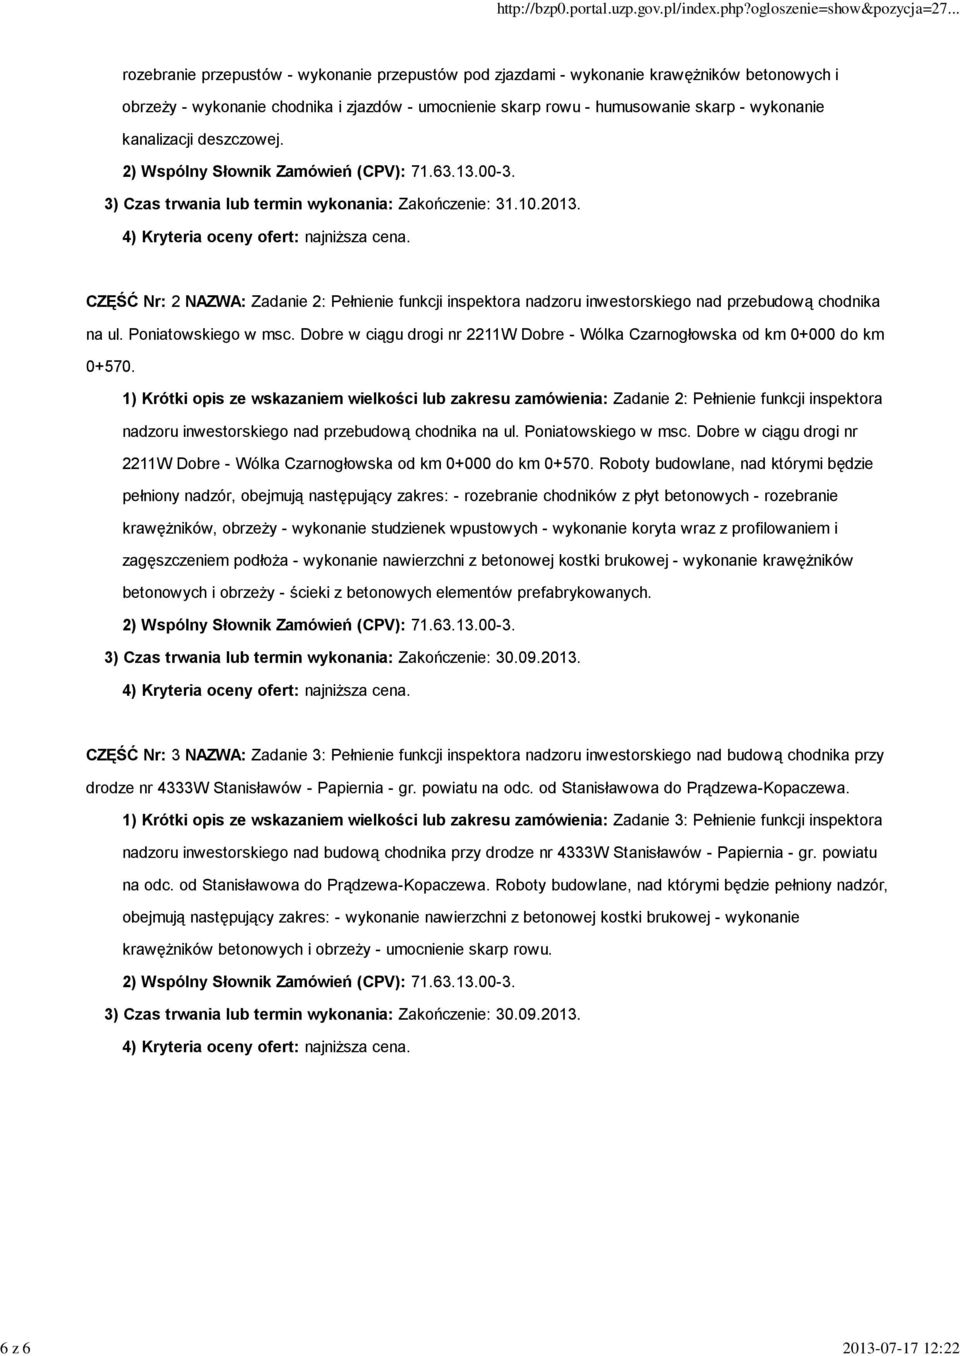 CZĘŚĆ Nr: 2 NAZWA: Zadanie 2: Pełnienie funkcji inspektora nadzoru inwestorskiego nad przebudową chodnika na ul. Poniatowskiego w msc.